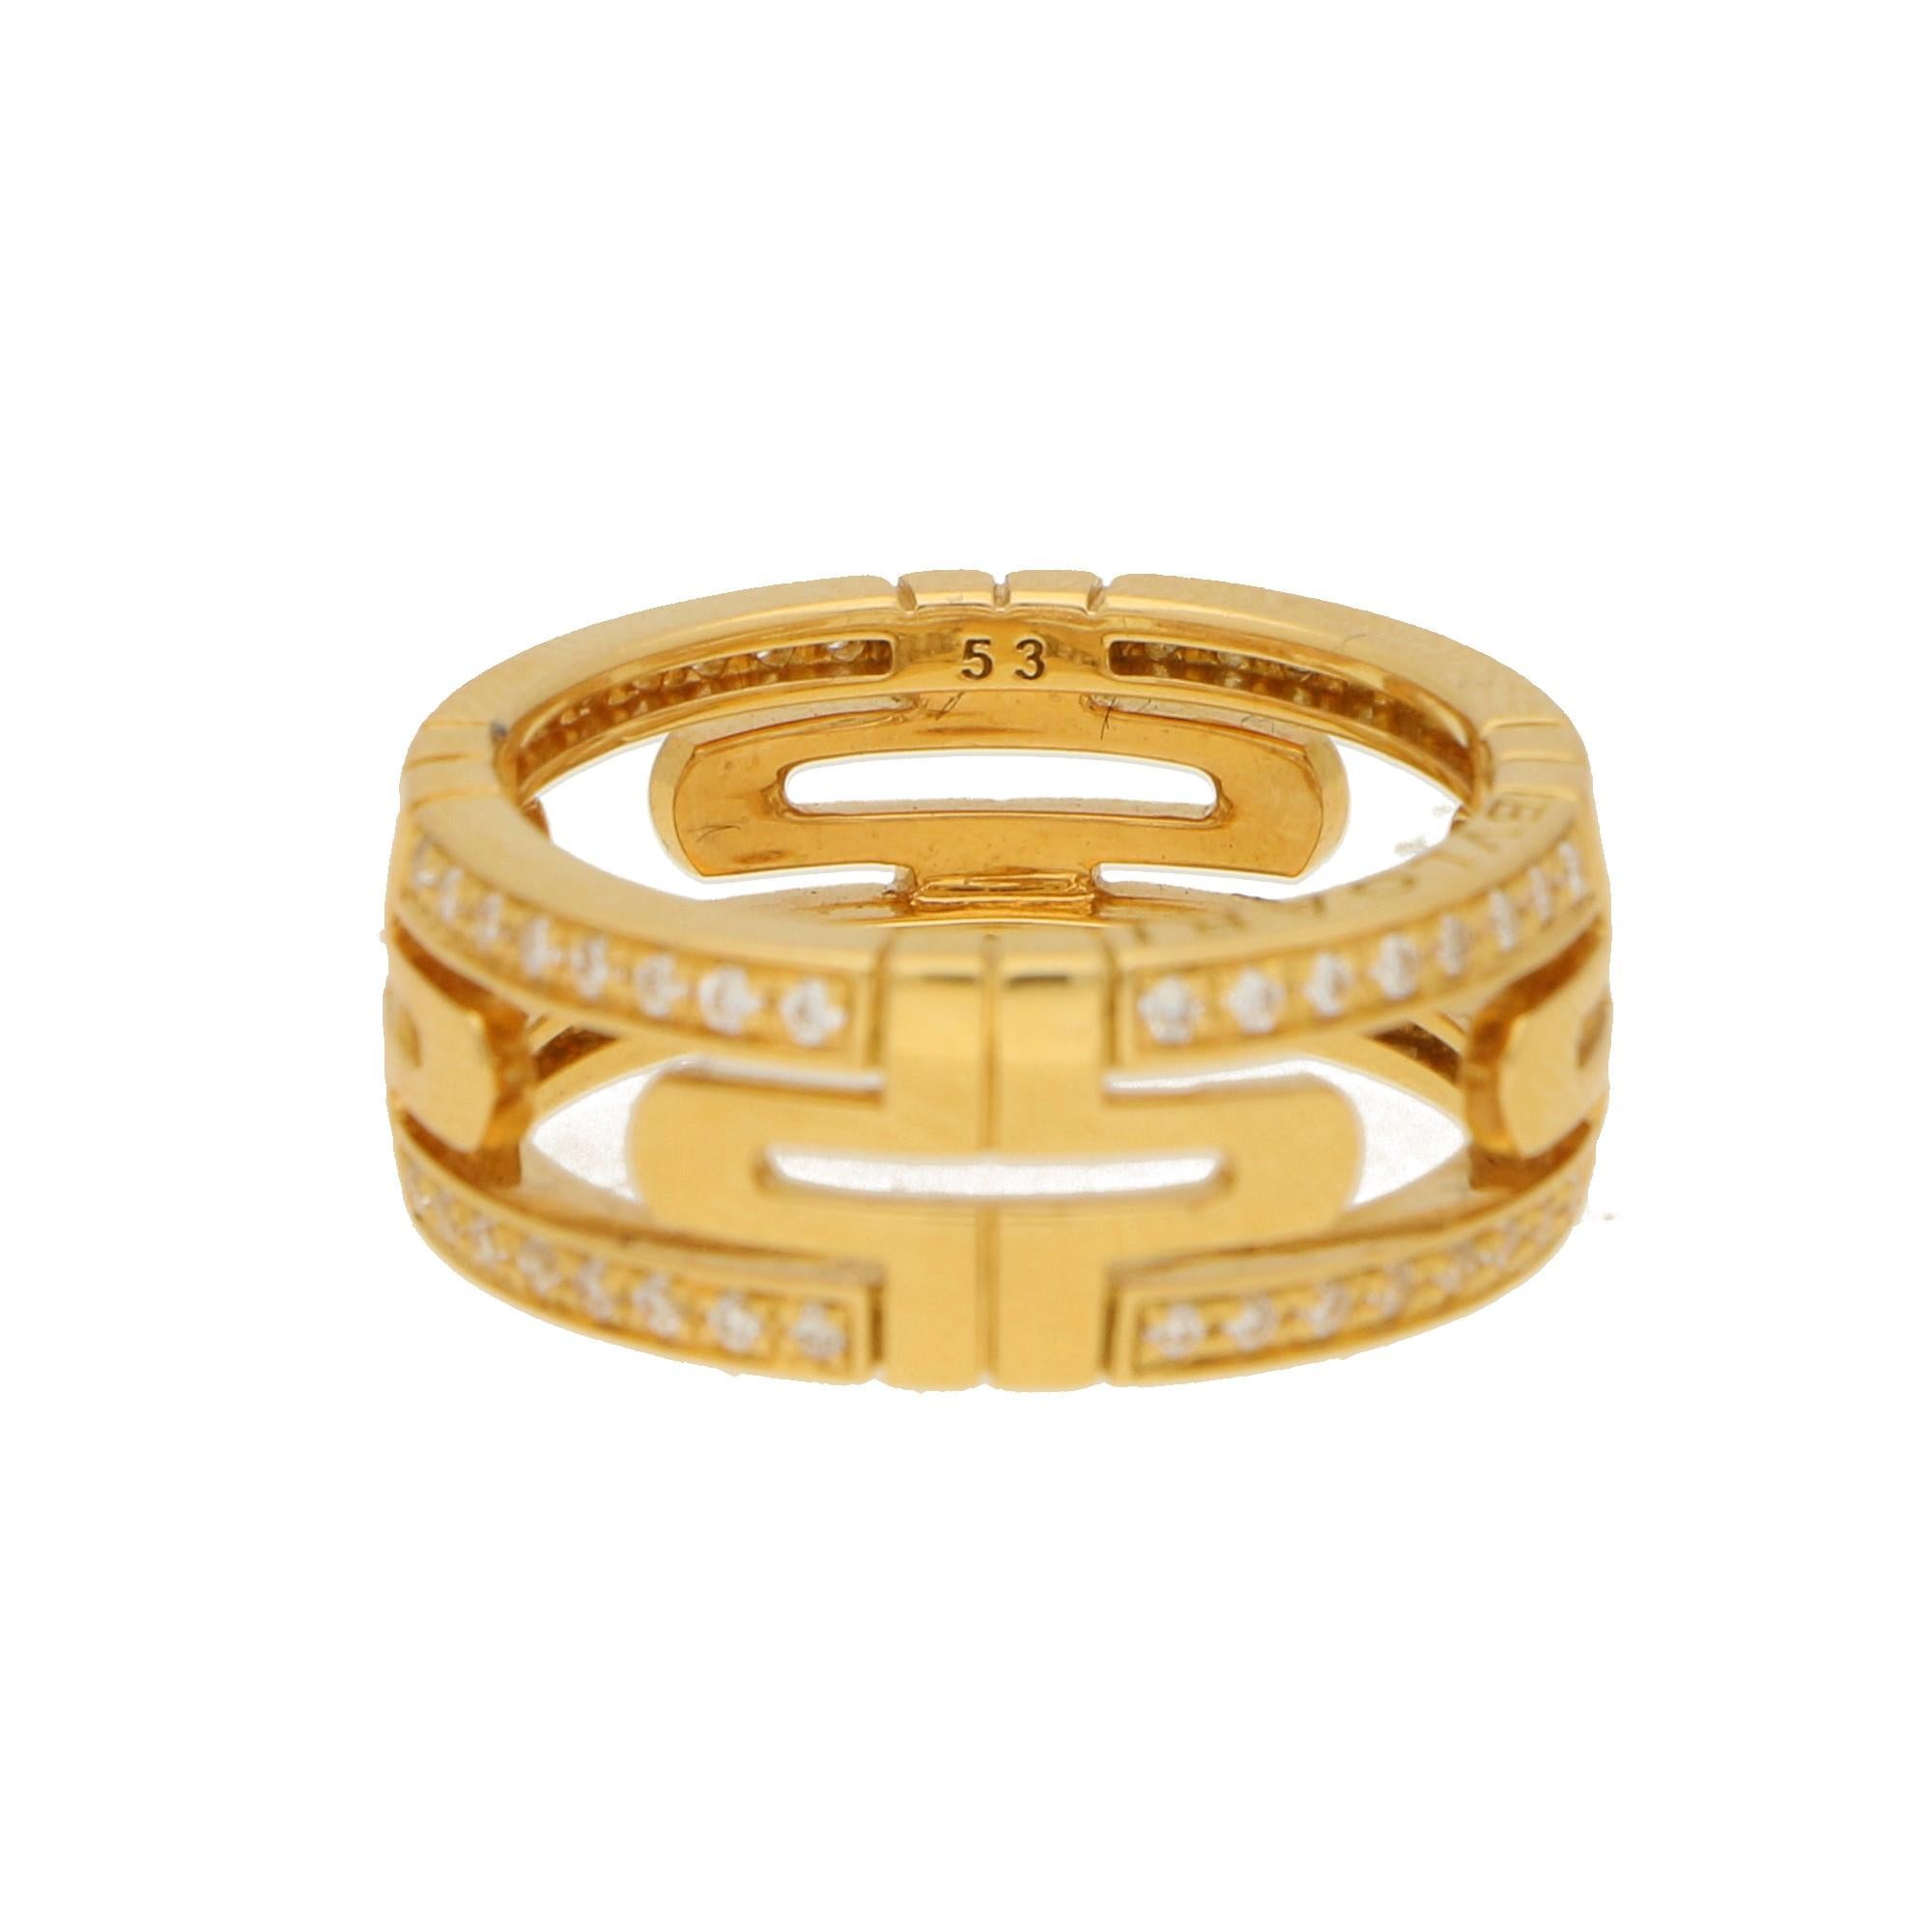 Round Cut Bvlgari Parentesi Diamond Eternity Ring in 18K Yellow Gold